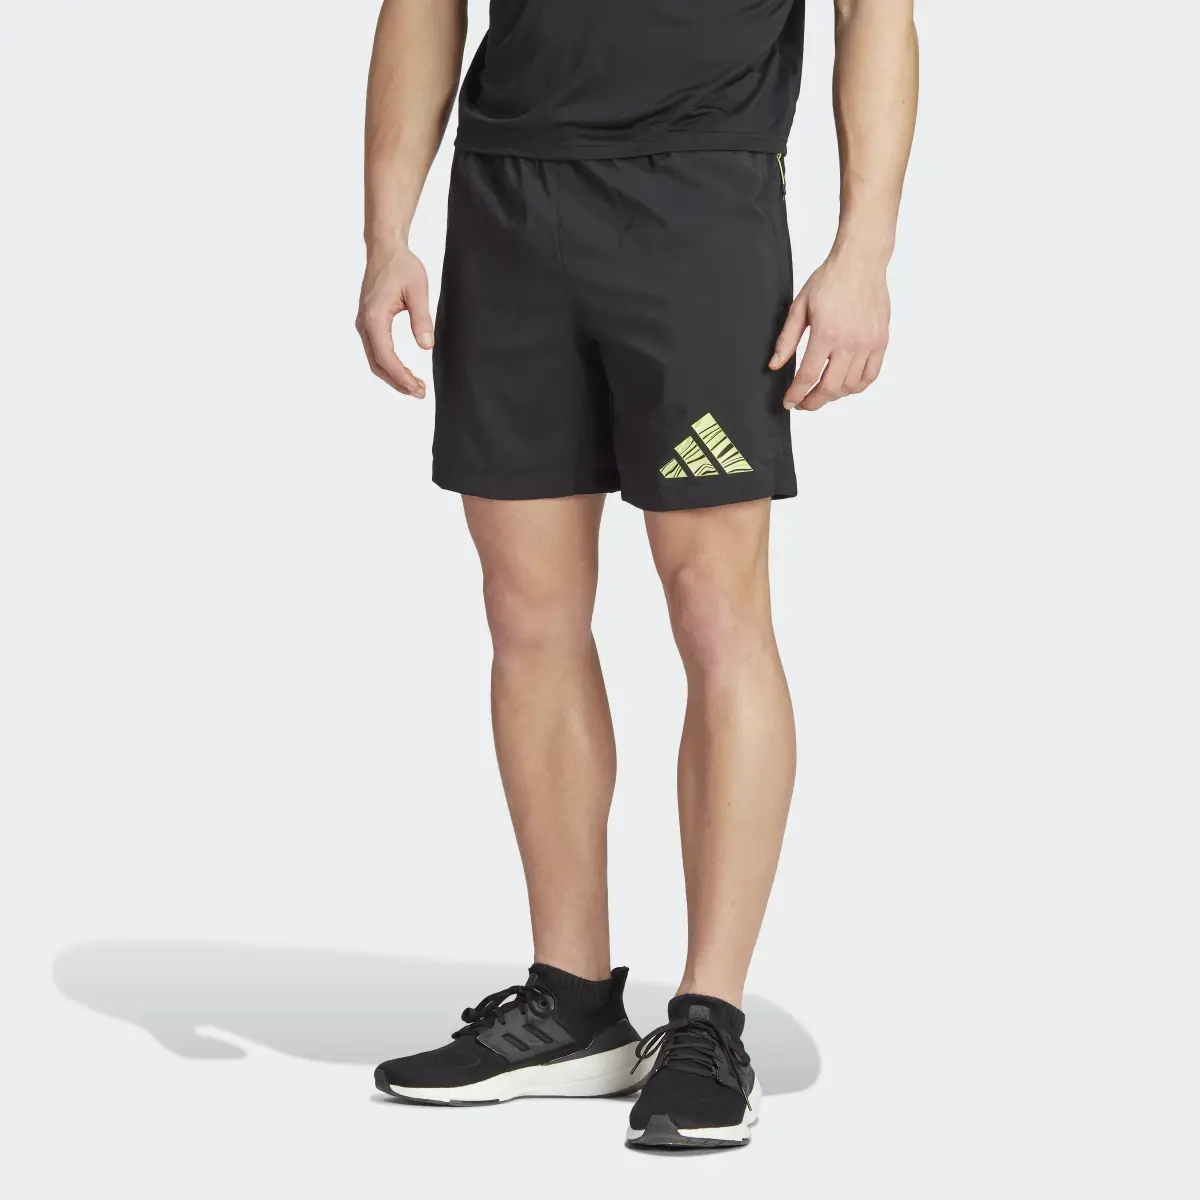 Adidas HIIT Training Shorts. 1